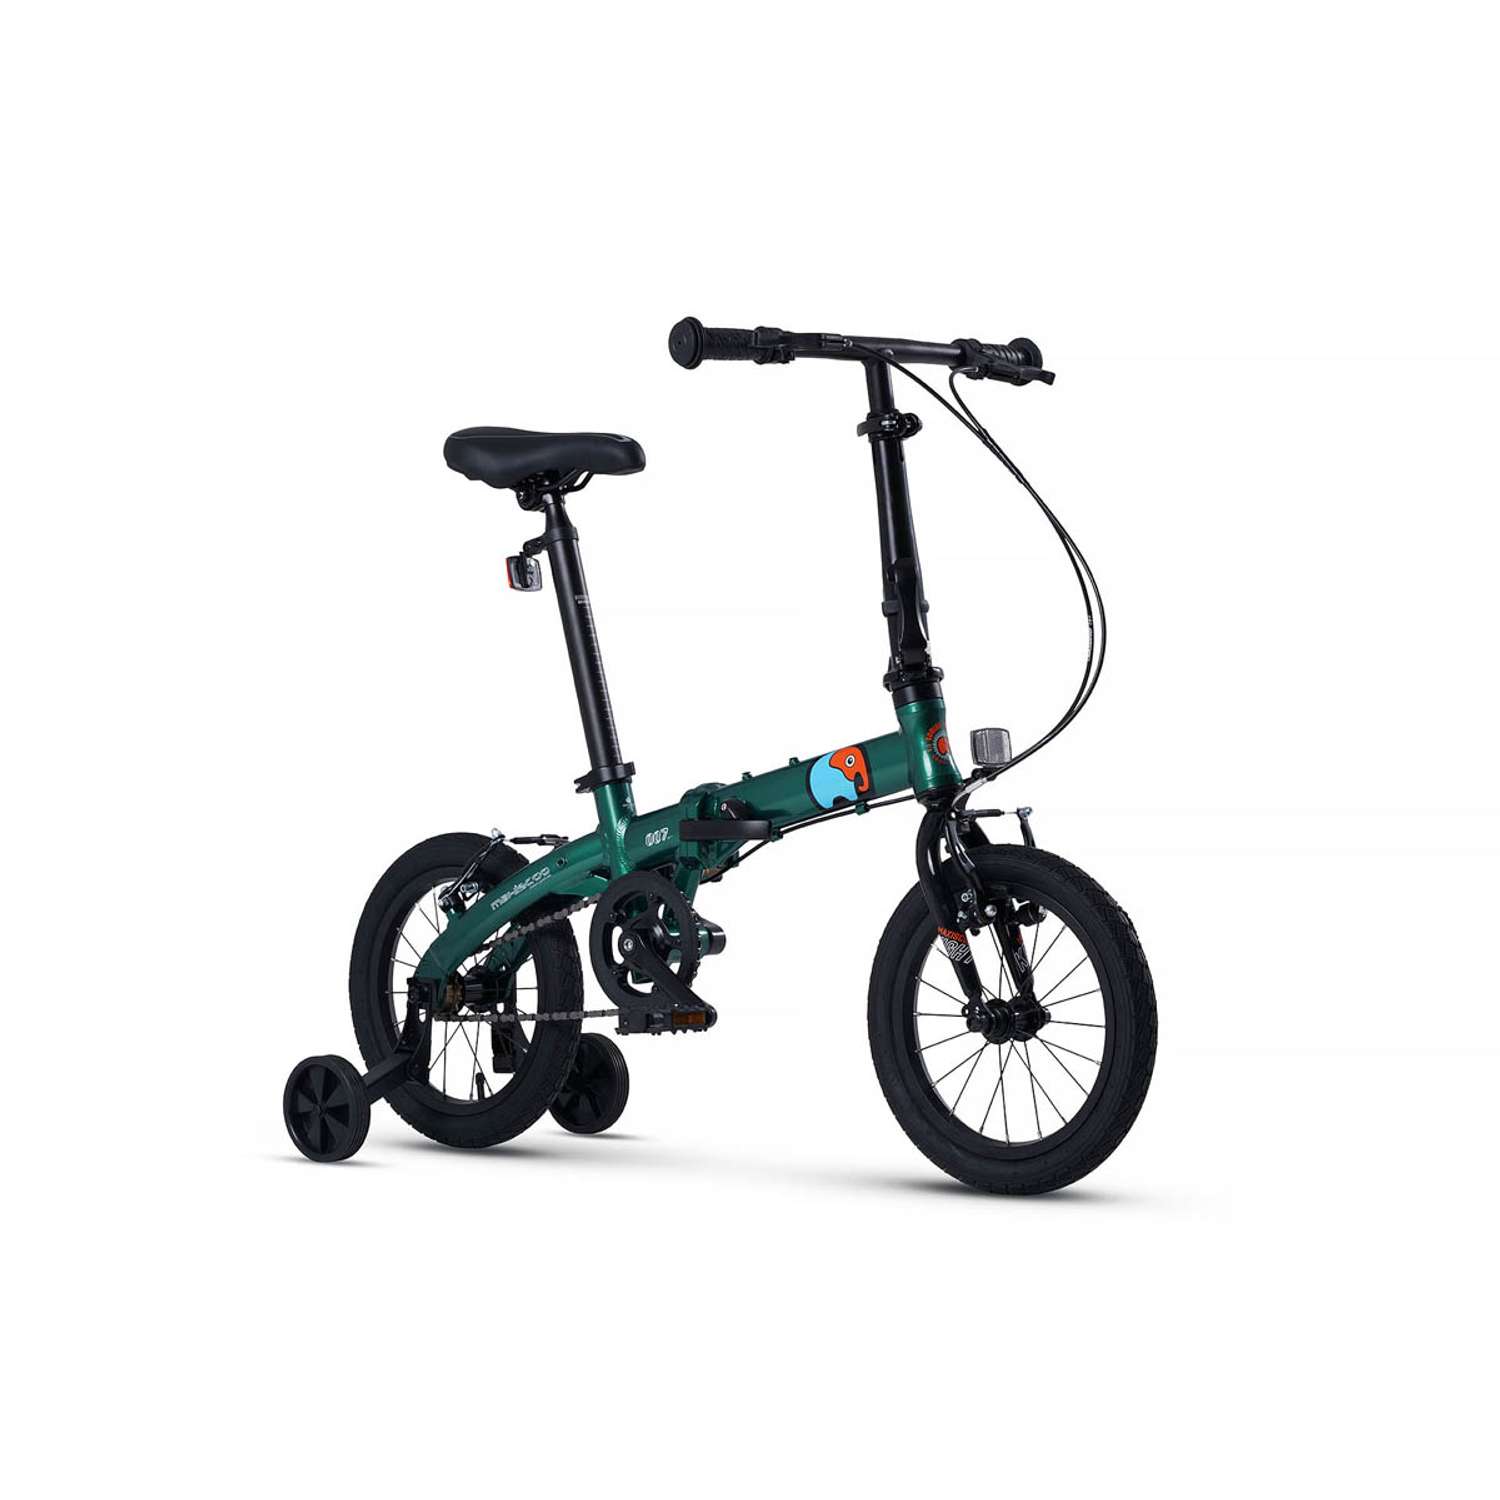 Велосипед Детский Складной Maxiscoo S007 стандарт 14 зеленый - фото 2